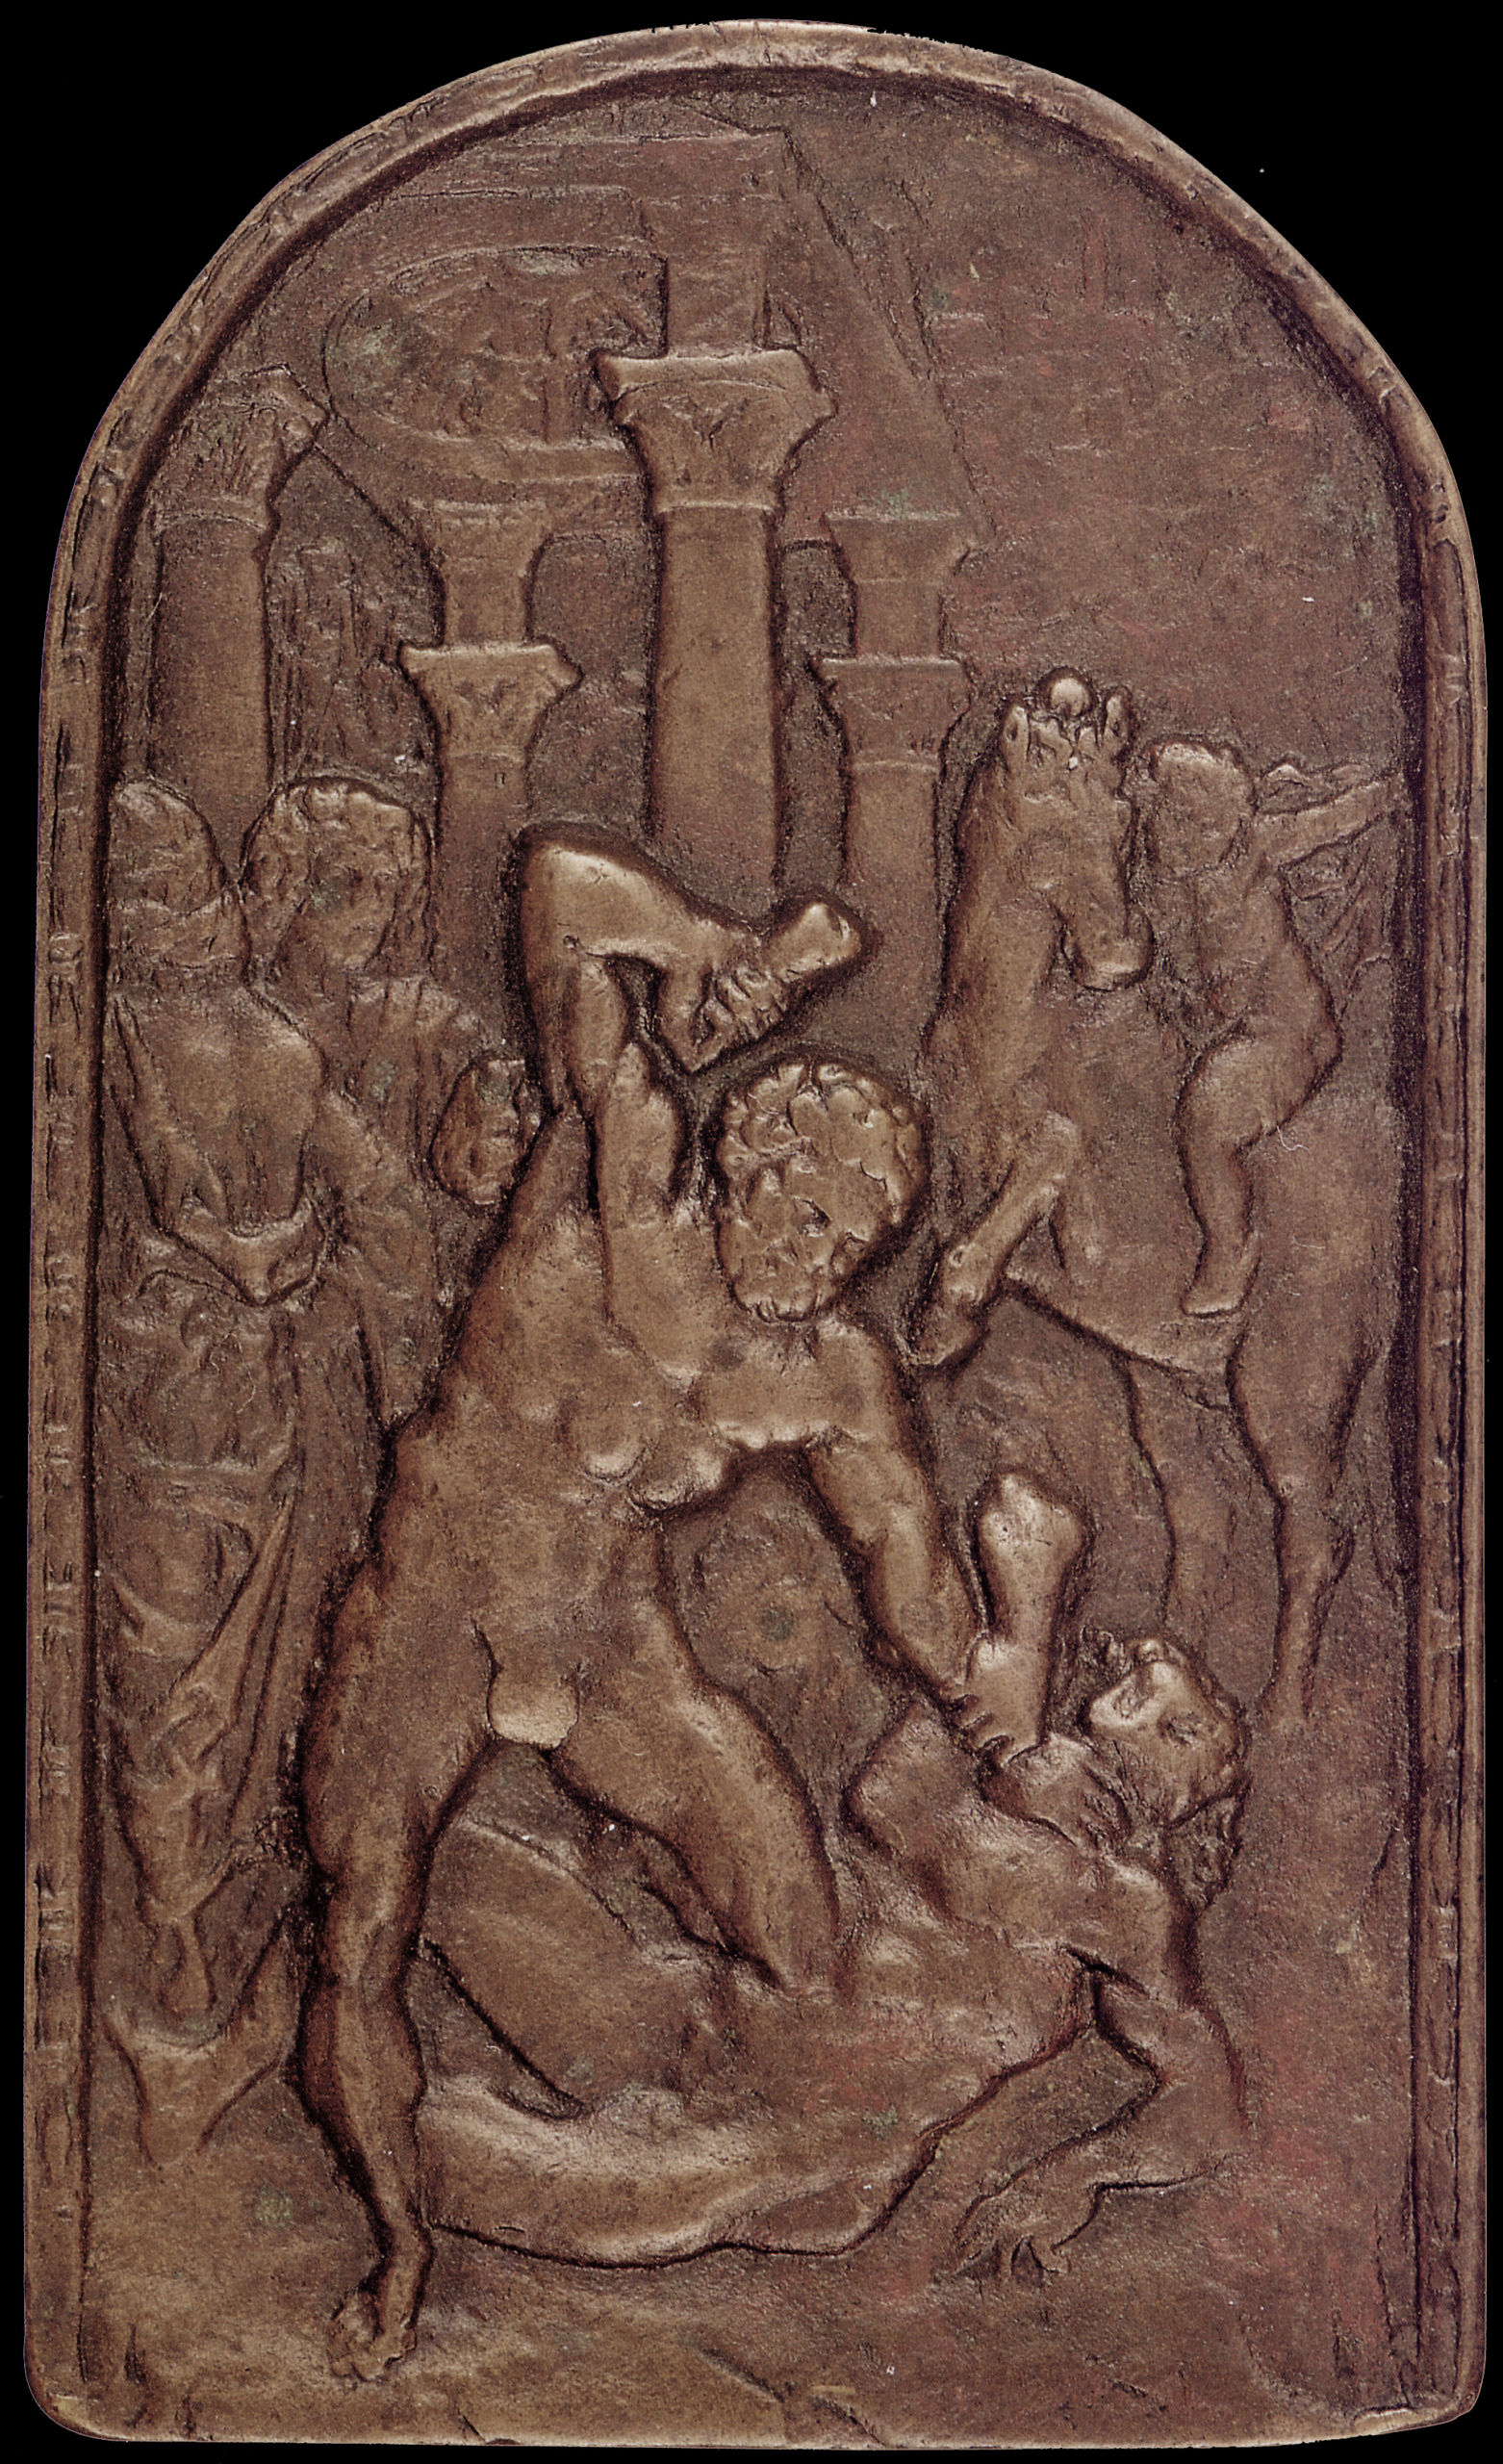 caradosso-ercole-caco-bronzo-fine-xv-inizi-xvi-secolo-washington-national-gallery